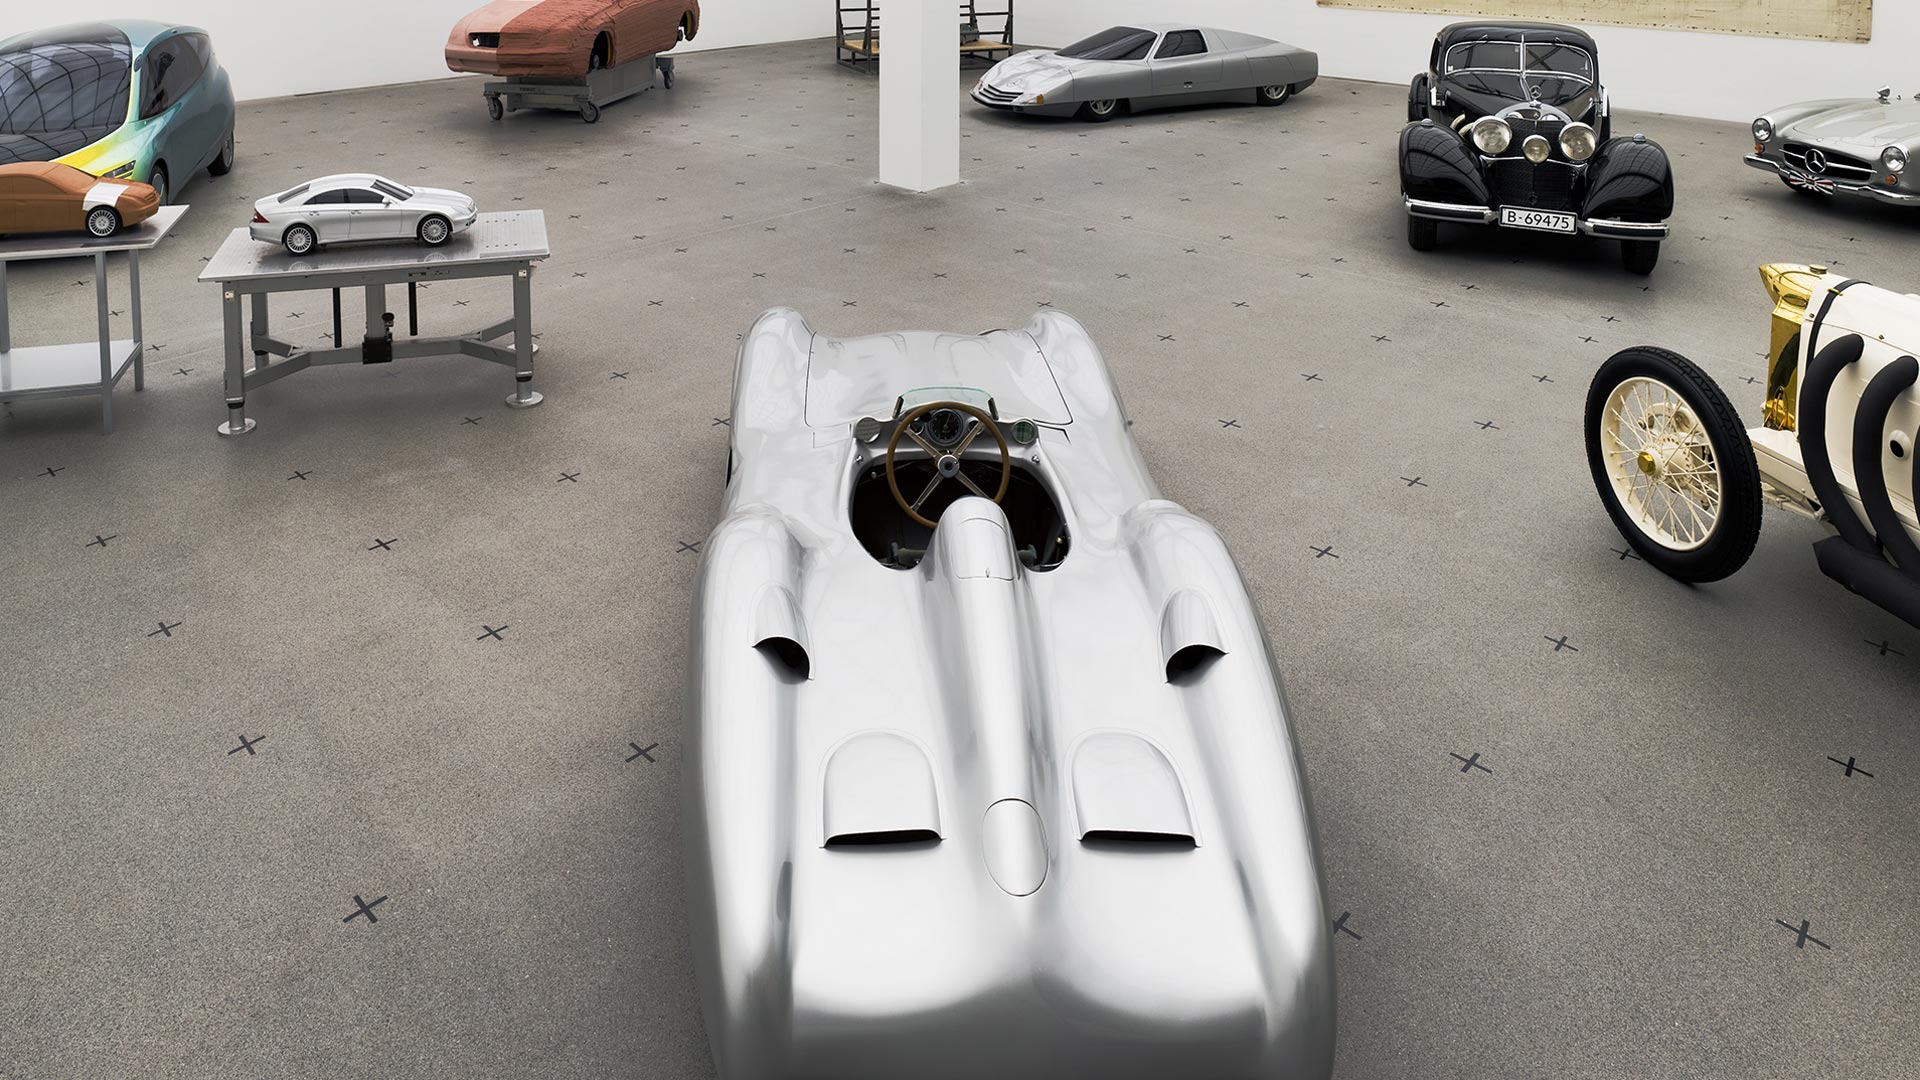 Blick in die Ausstellung "Meilensteine. Automobil-Design. Mercedes-Benz" aus der Vogelperspektive. Zu sehen sind 7 verschiedene Automobile sowie 2 Miniaturen auf Podesten.